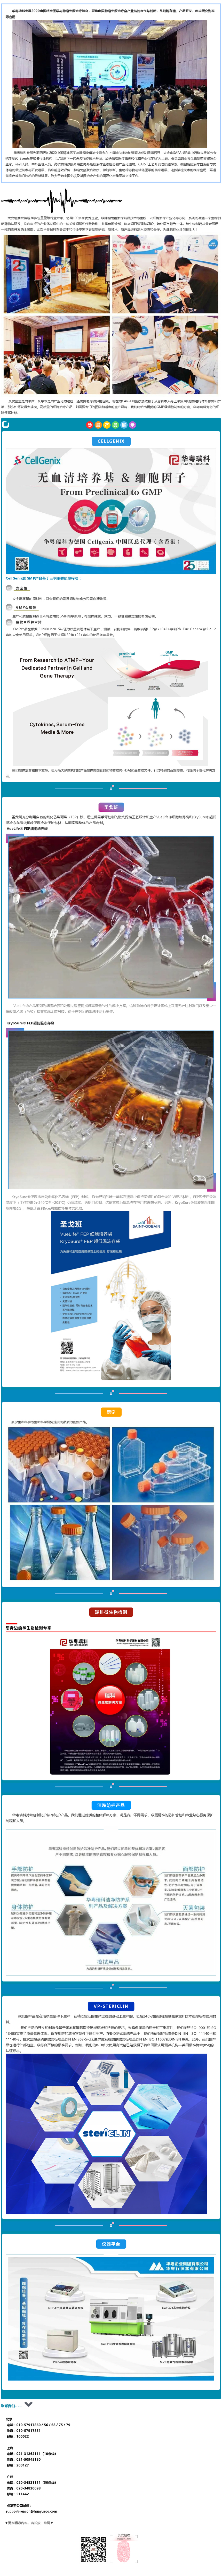 大红鹰dhy7788参展2020中国精准医学与肿瘤免疫治疗峰会，聚焦中国肿瘤免疫治疗全产业链的合作与创新！